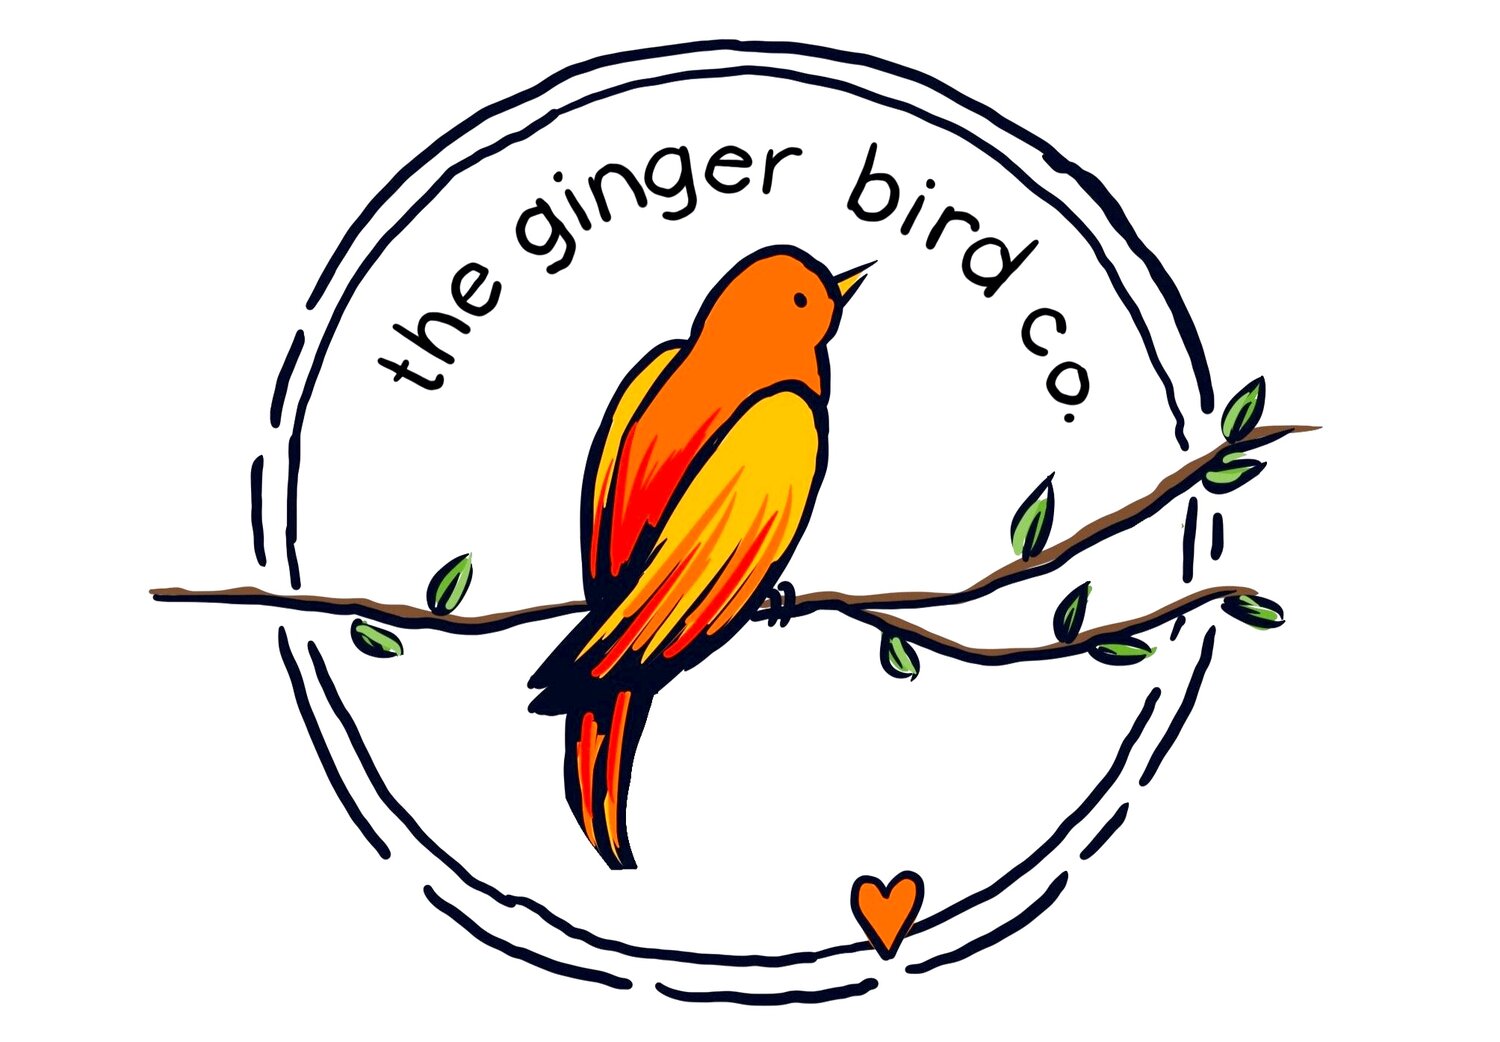 The Ginger Bird Co.